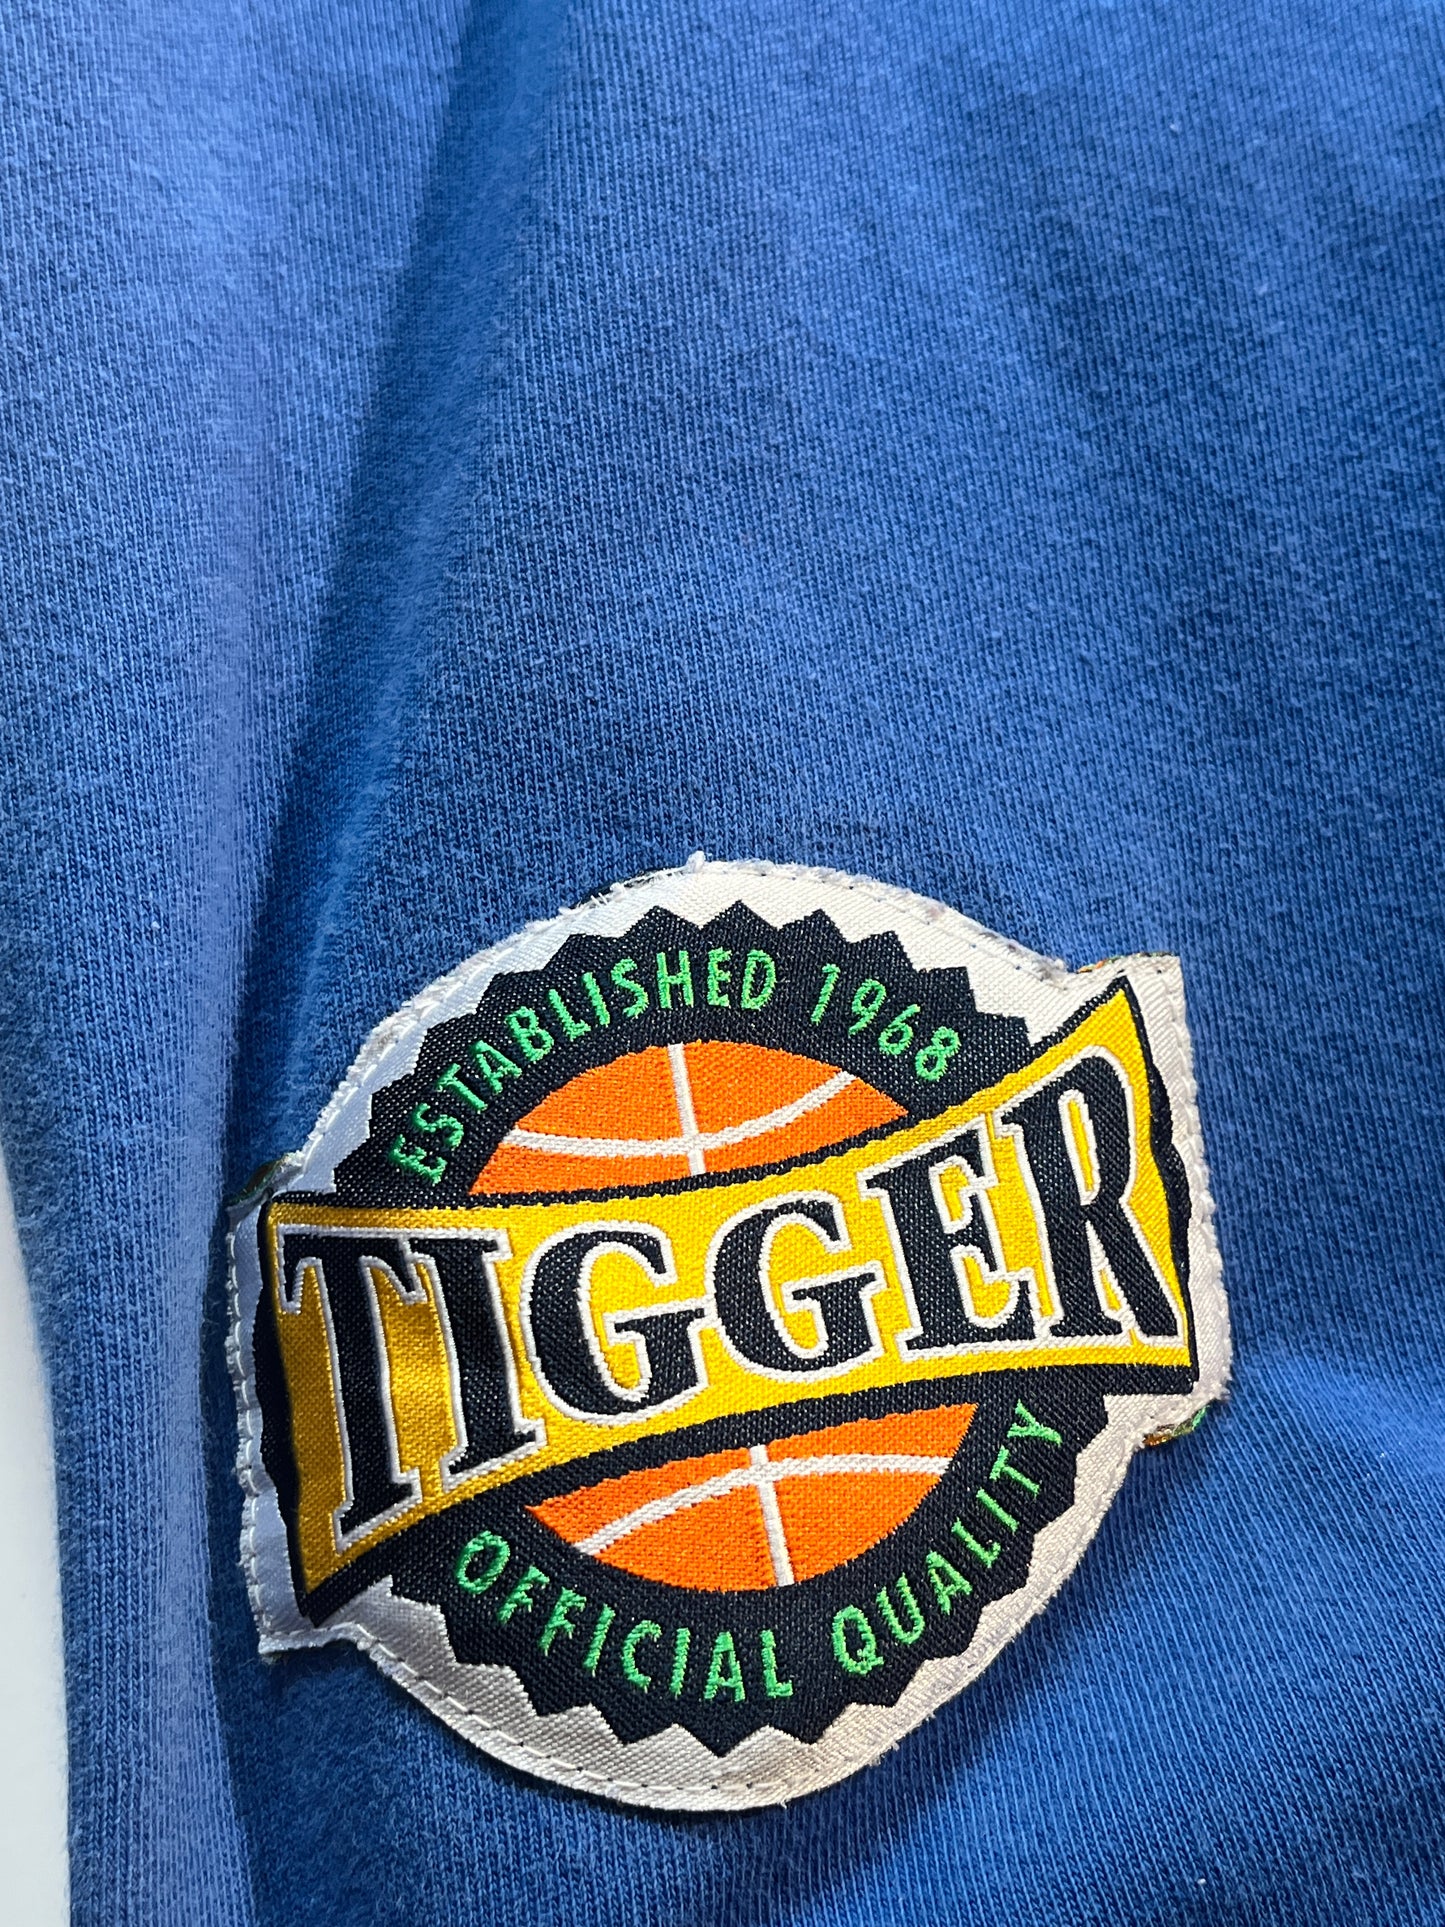 Vintage Tigger Shirt Big Top Disney